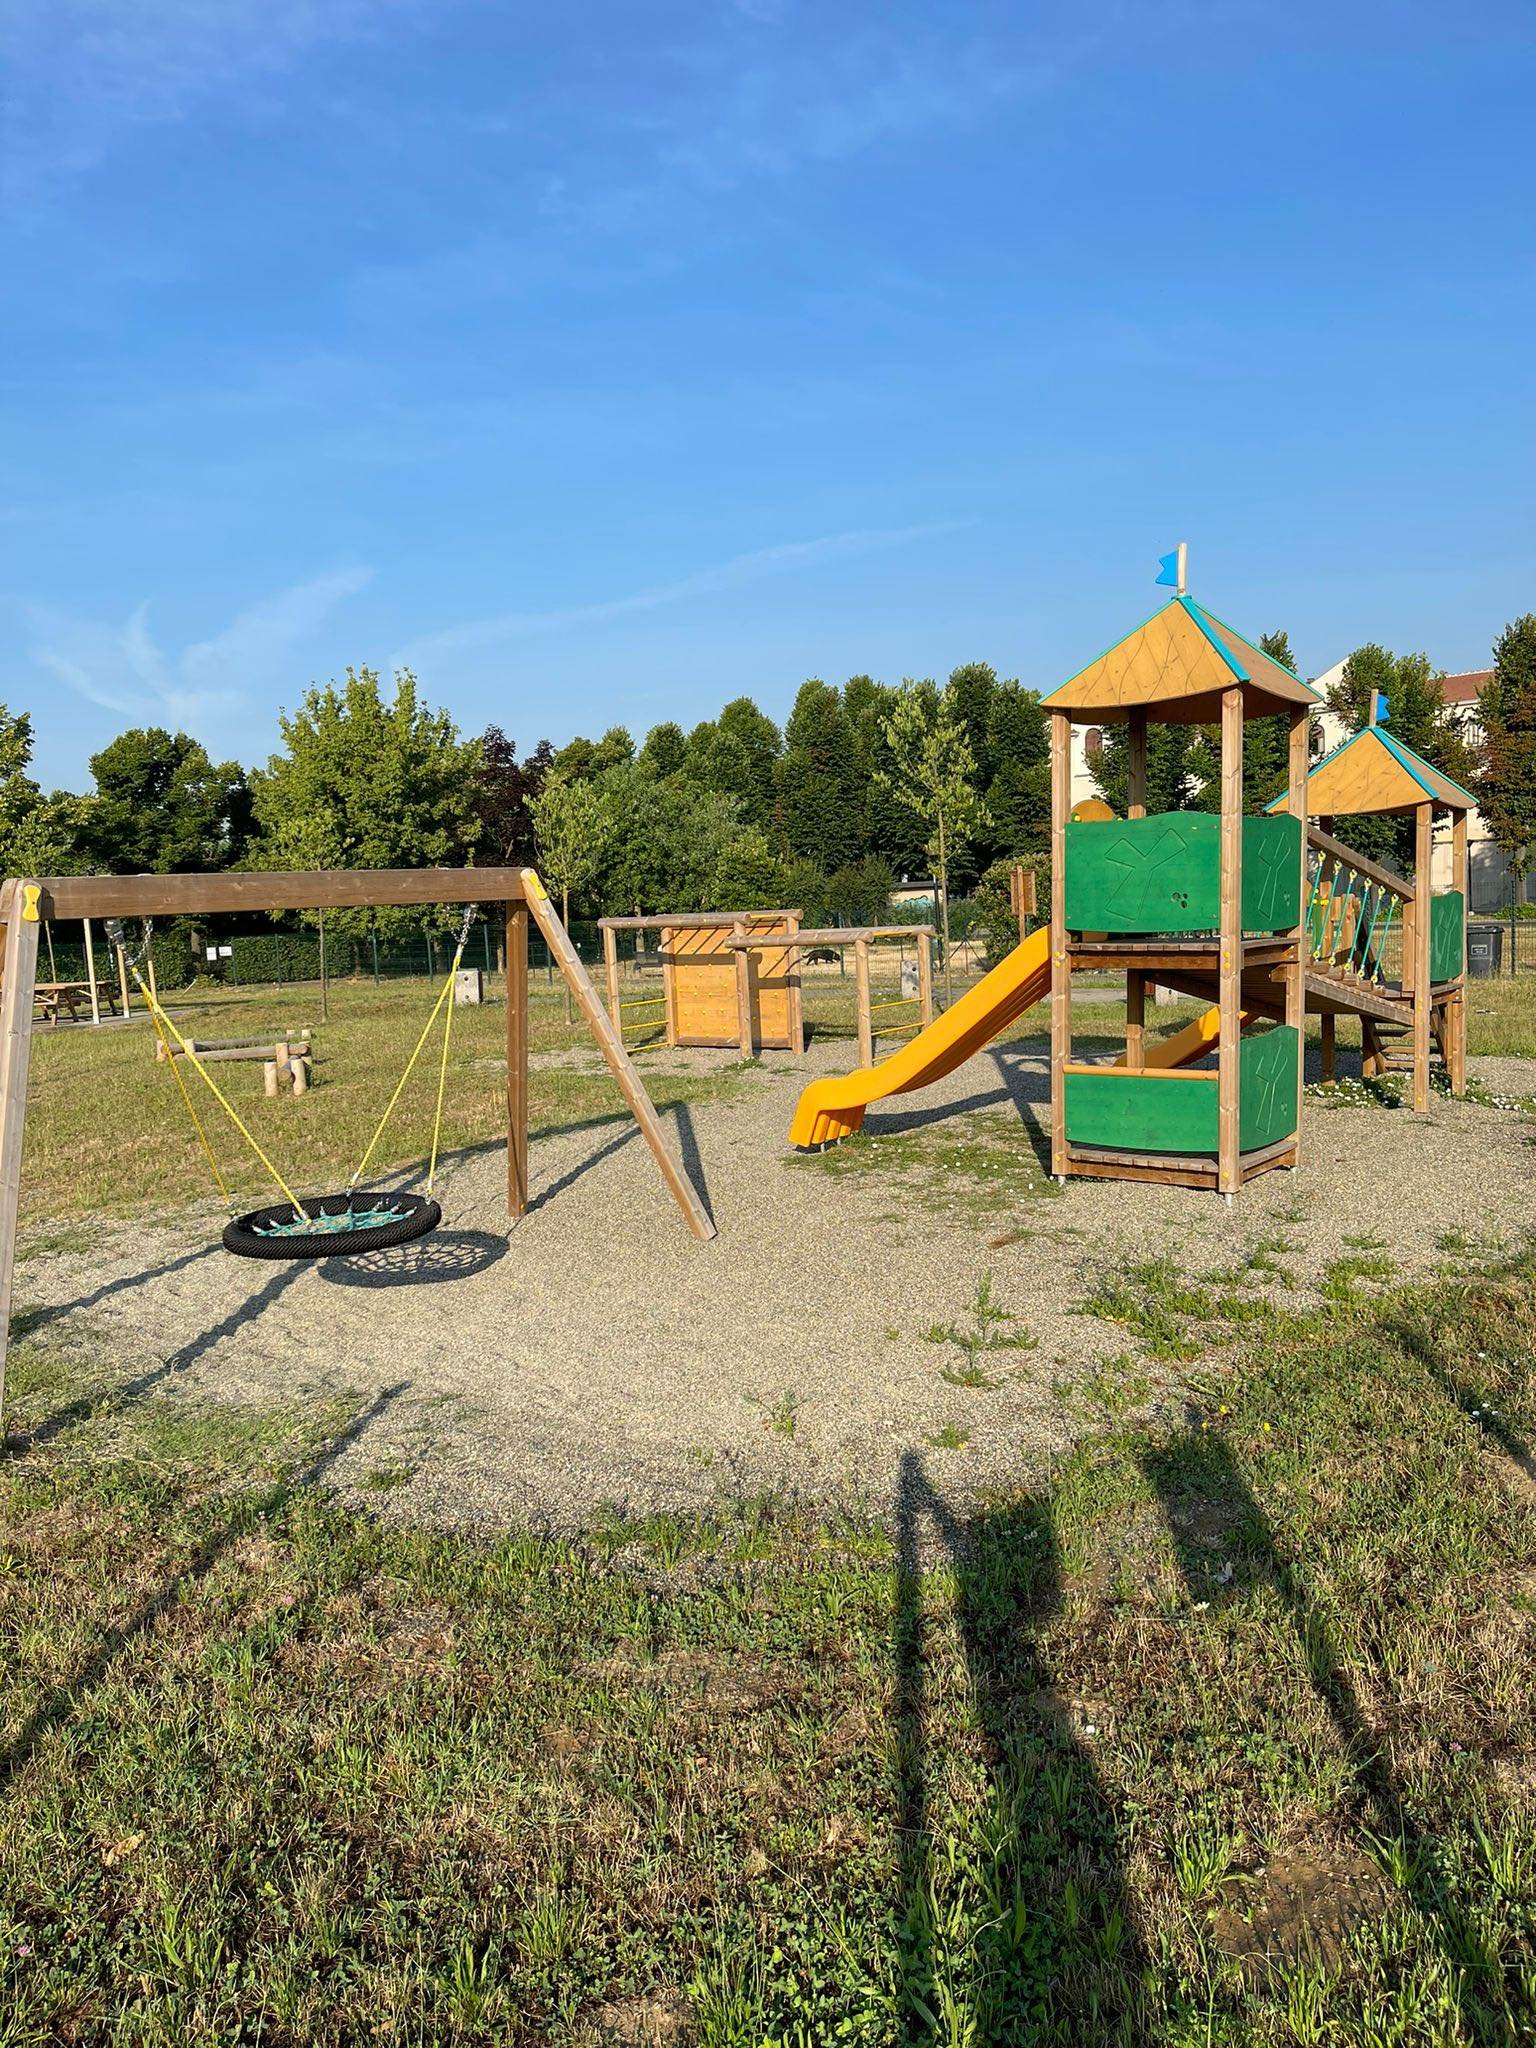 “Chiediamo che quel parco per bambini recintato diventi sempre disponibile”